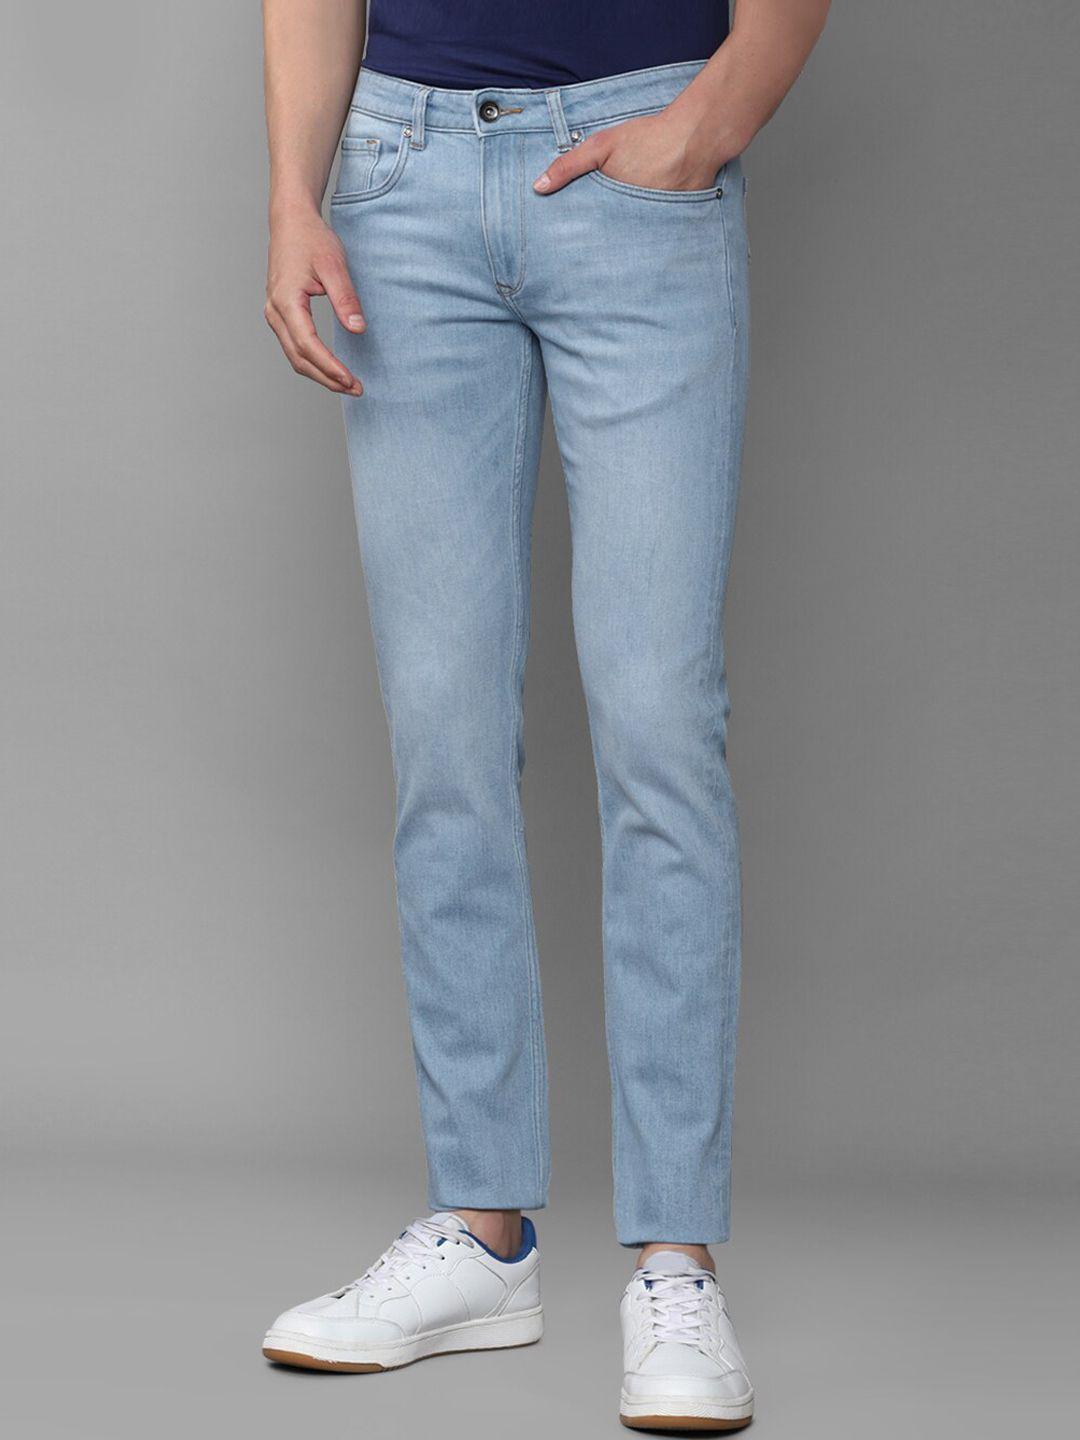 Louis Philippe Jeans Men Blue Slim Fit Jeans